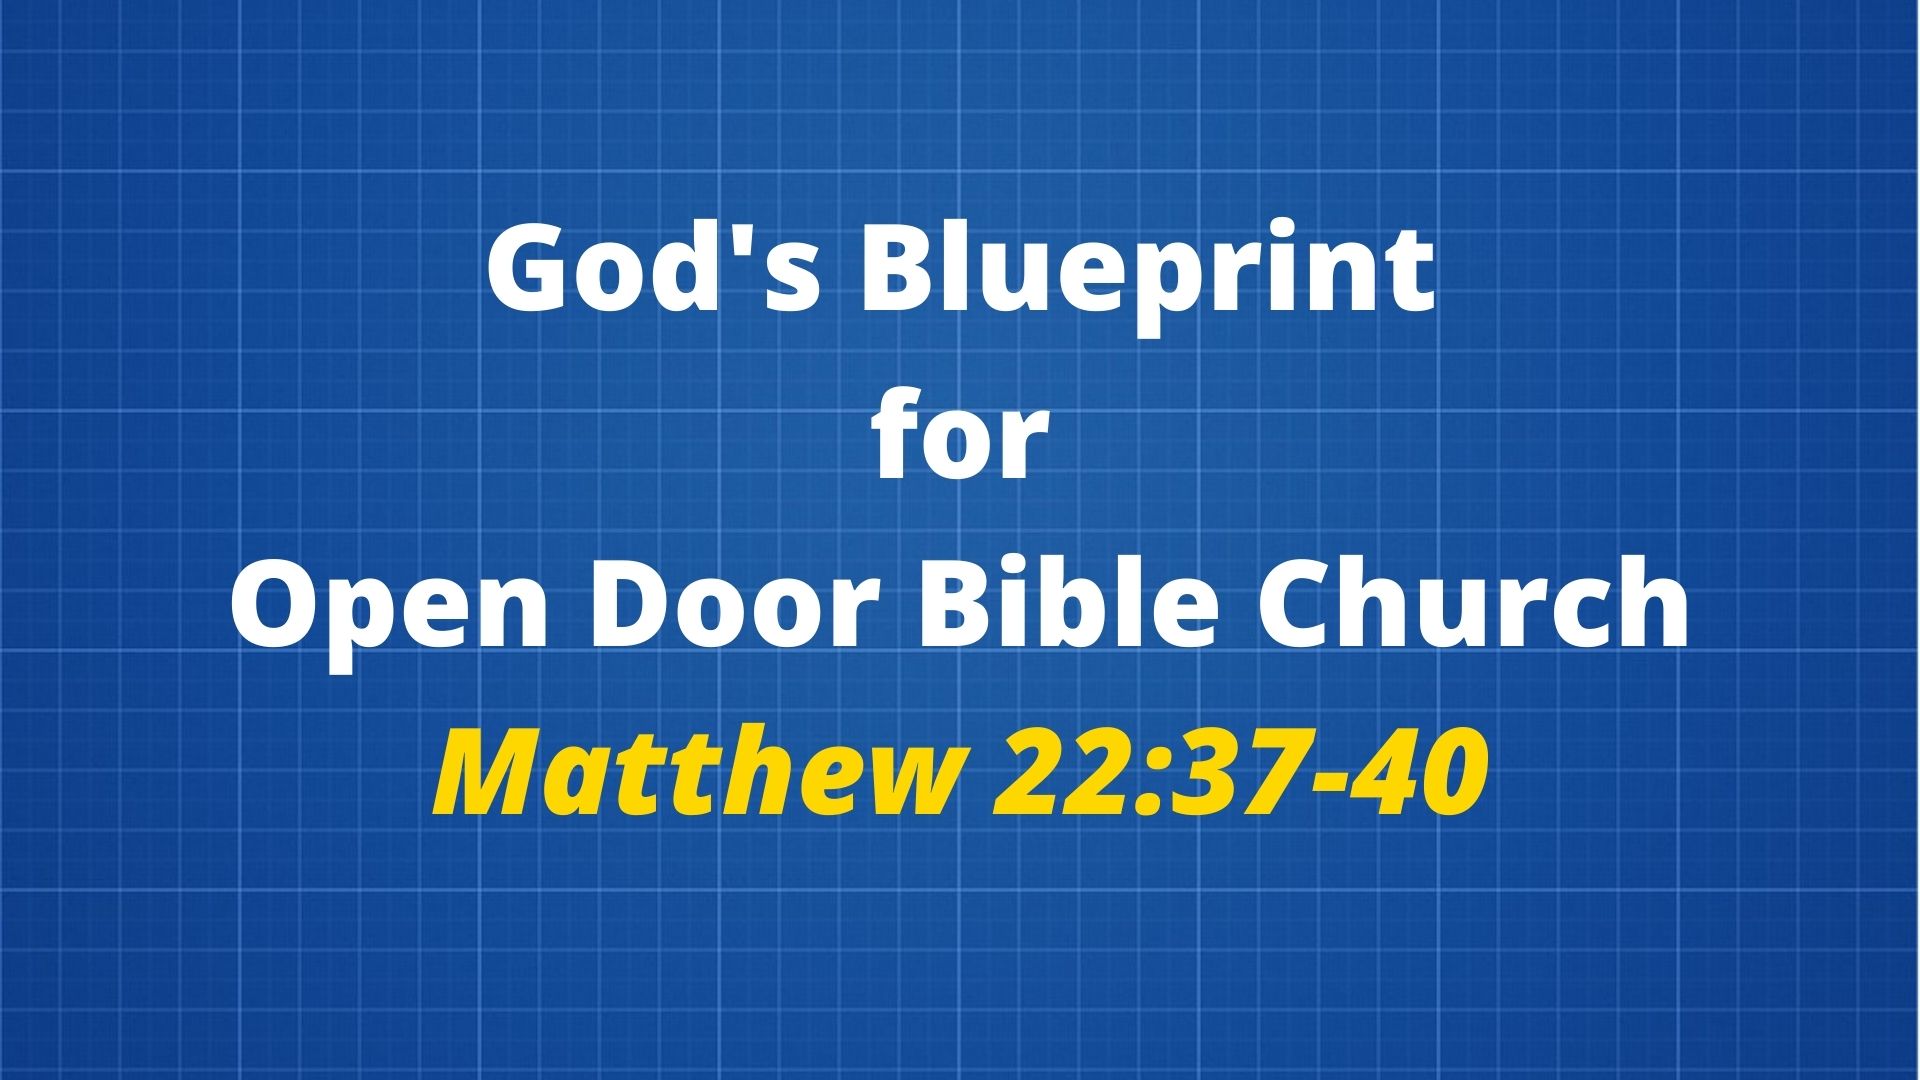 God's Blueprint for Open Door Bible Church (Matthew 22:37-40) Image